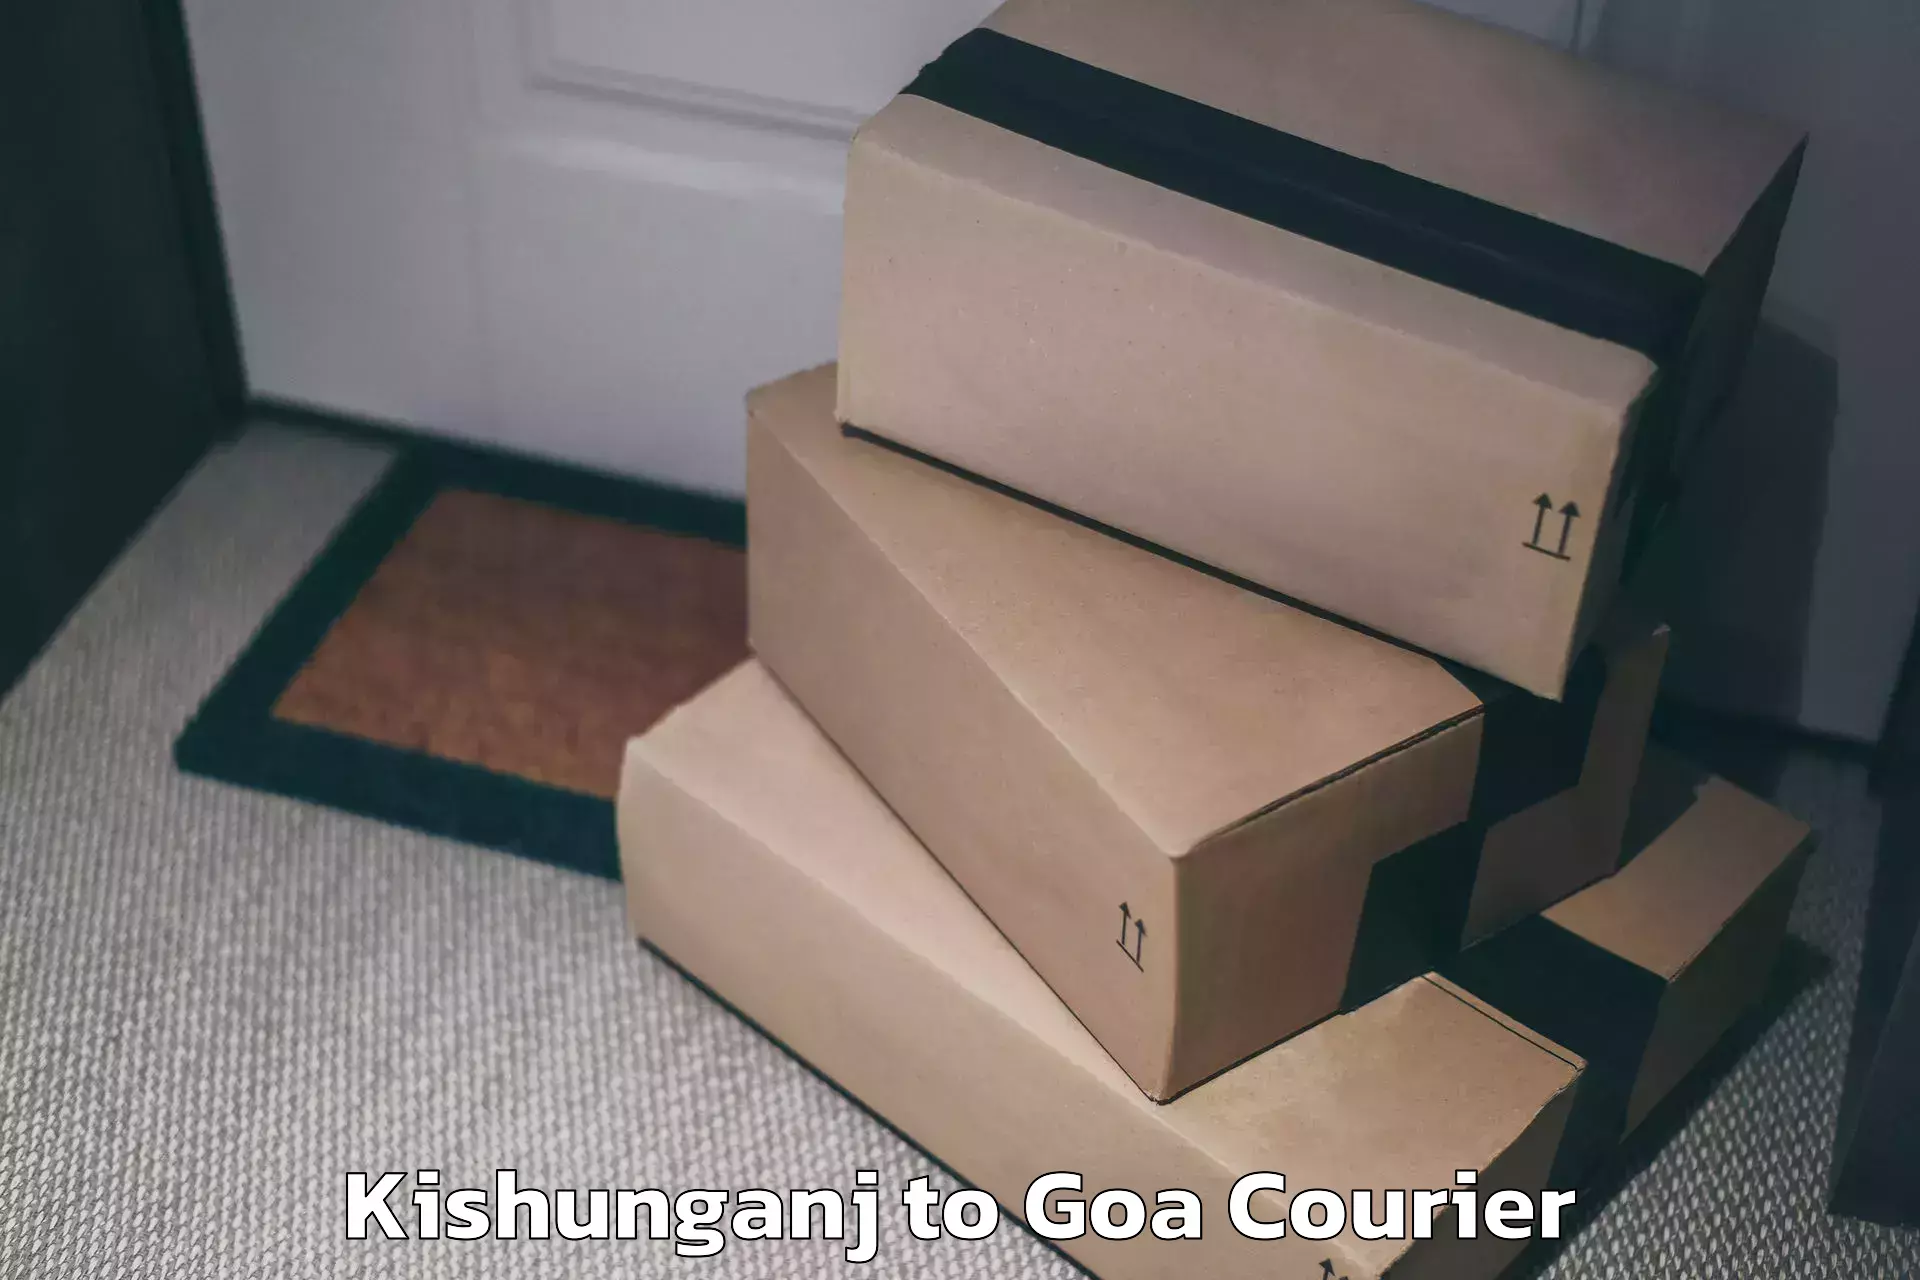 Luggage shipping planner Kishunganj to IIT Goa